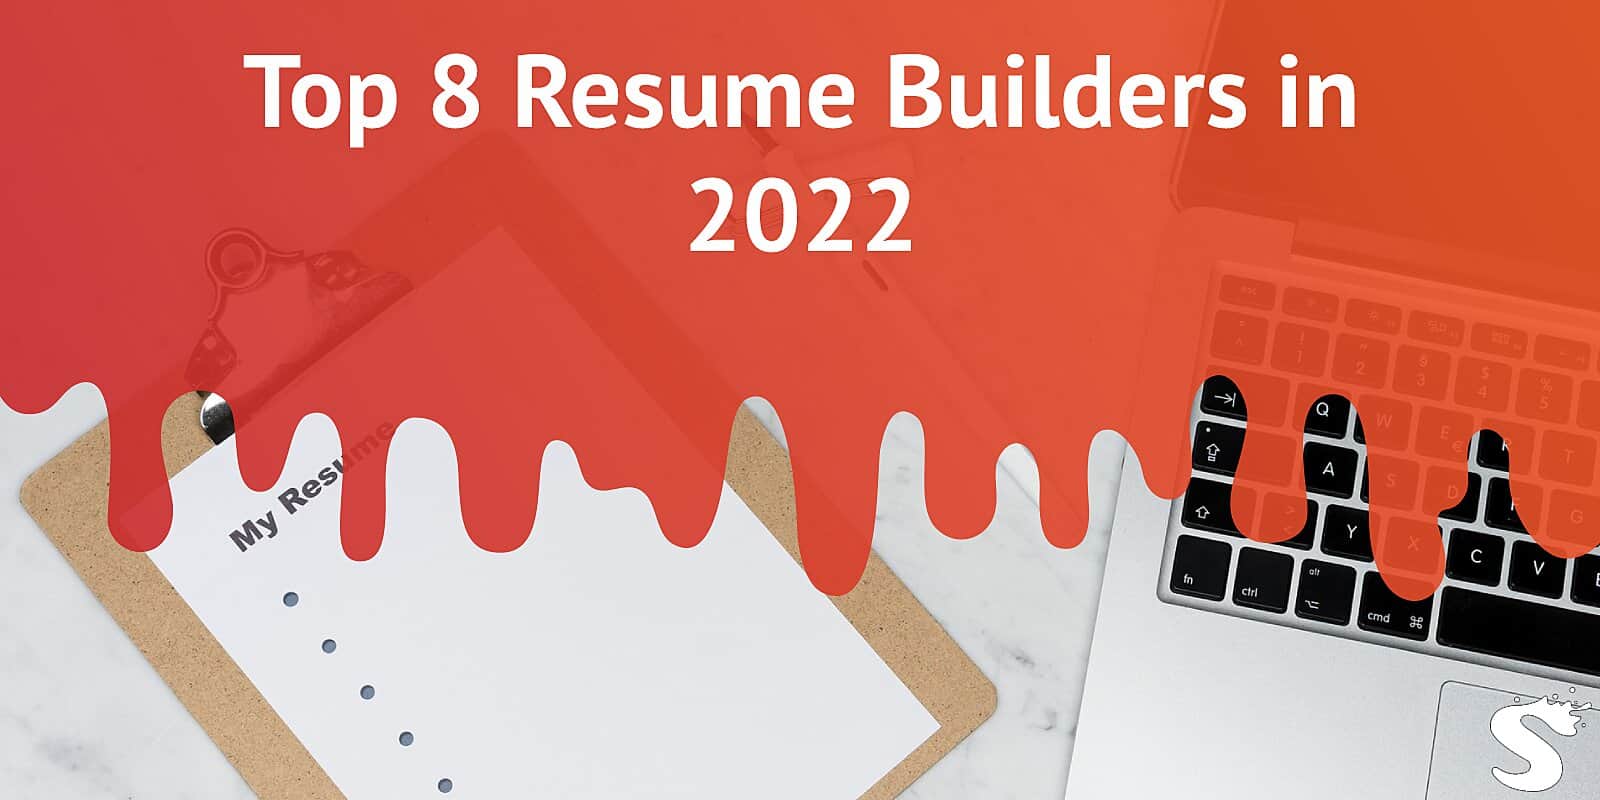 Top 8 Resume Builders in 2022